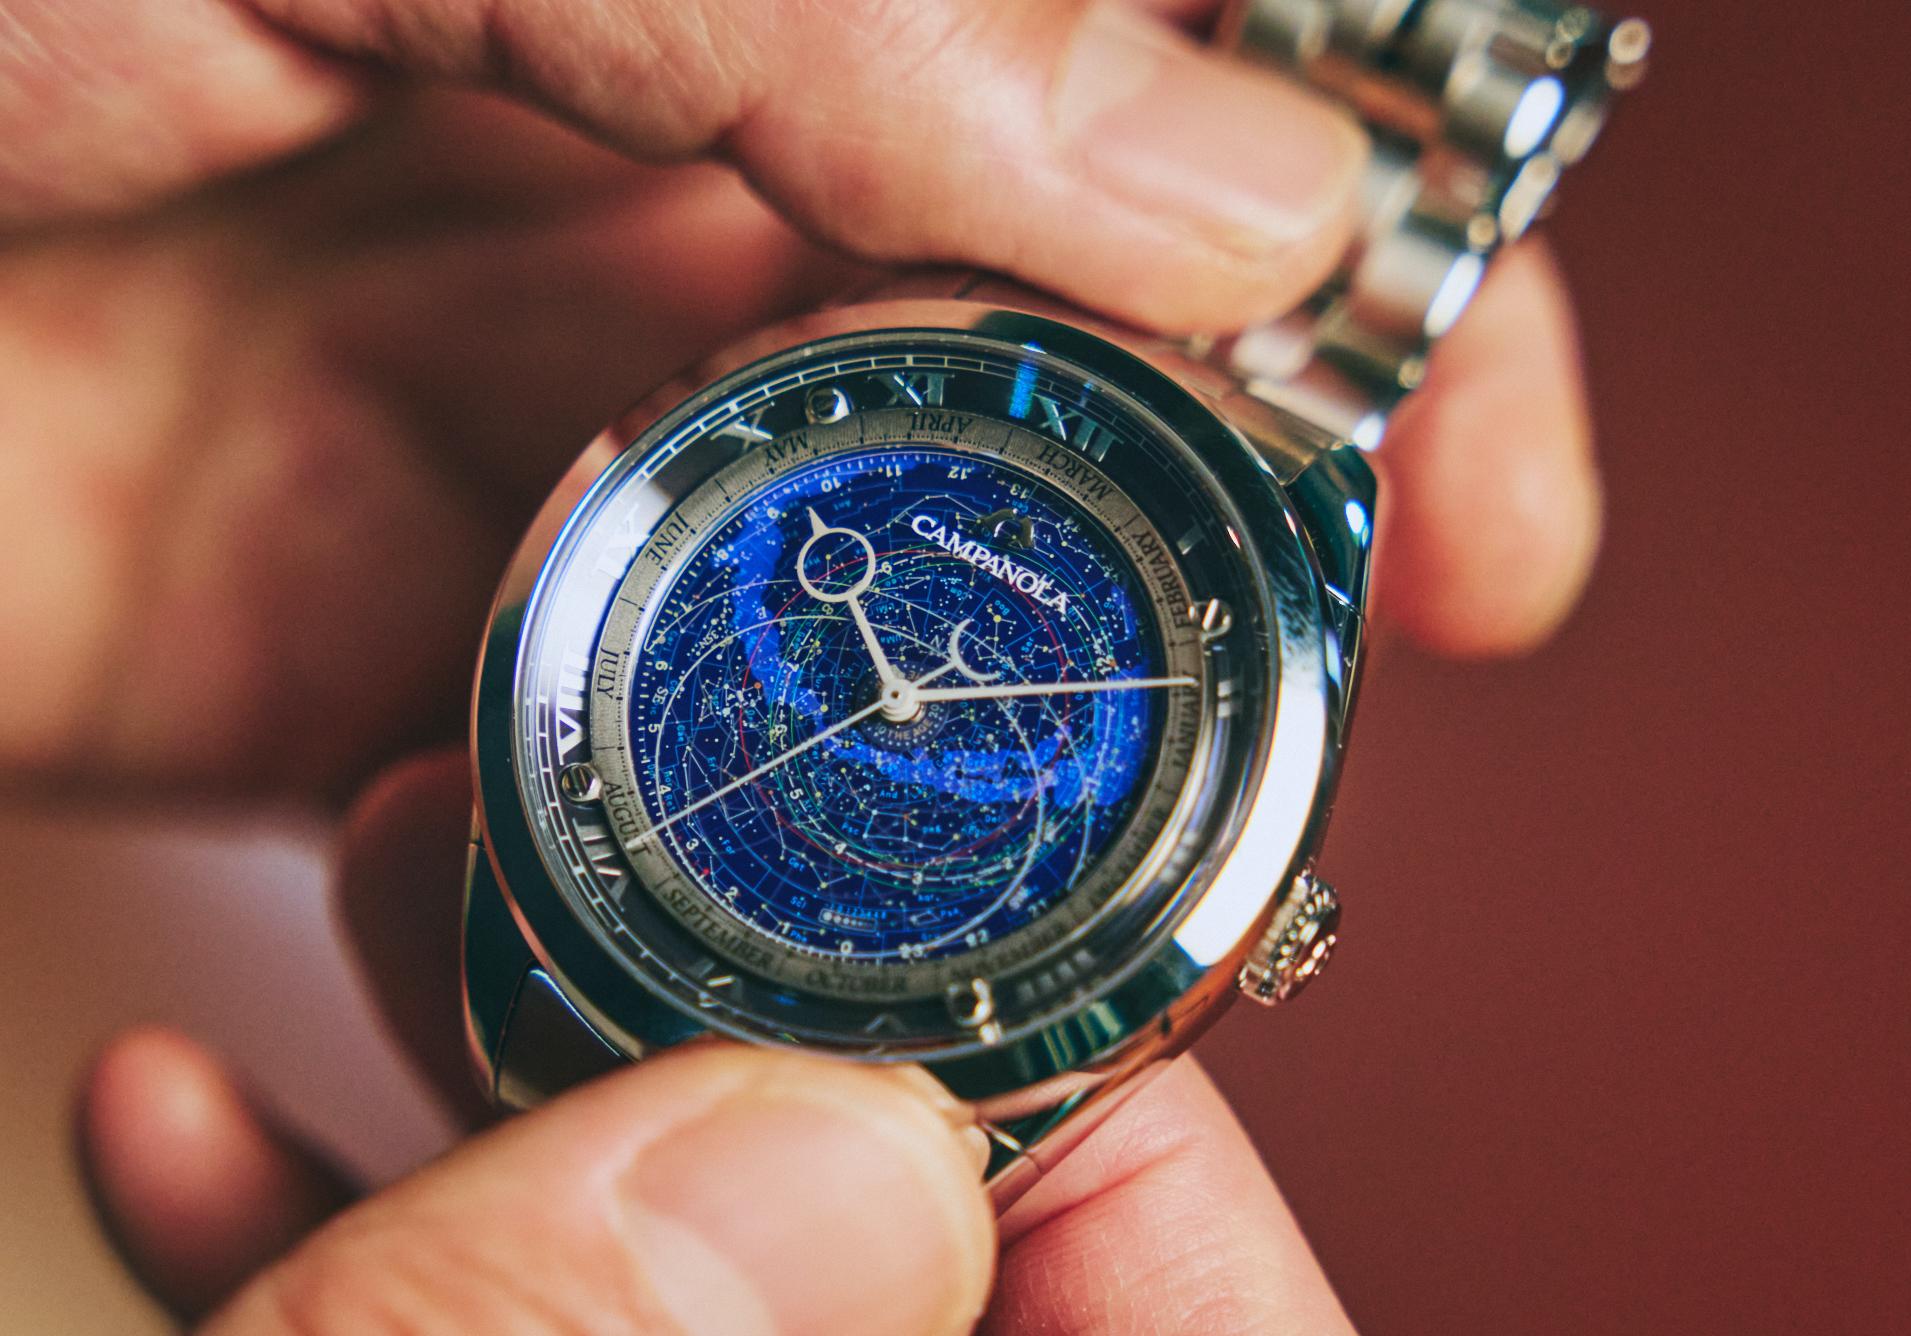 私たちは、138億年前の宇宙とつながっている──精密な“星空”を備えた腕時計｢カンパノラ コスモサイン｣が開く、天体へのトビラ | Business  Insider Japan